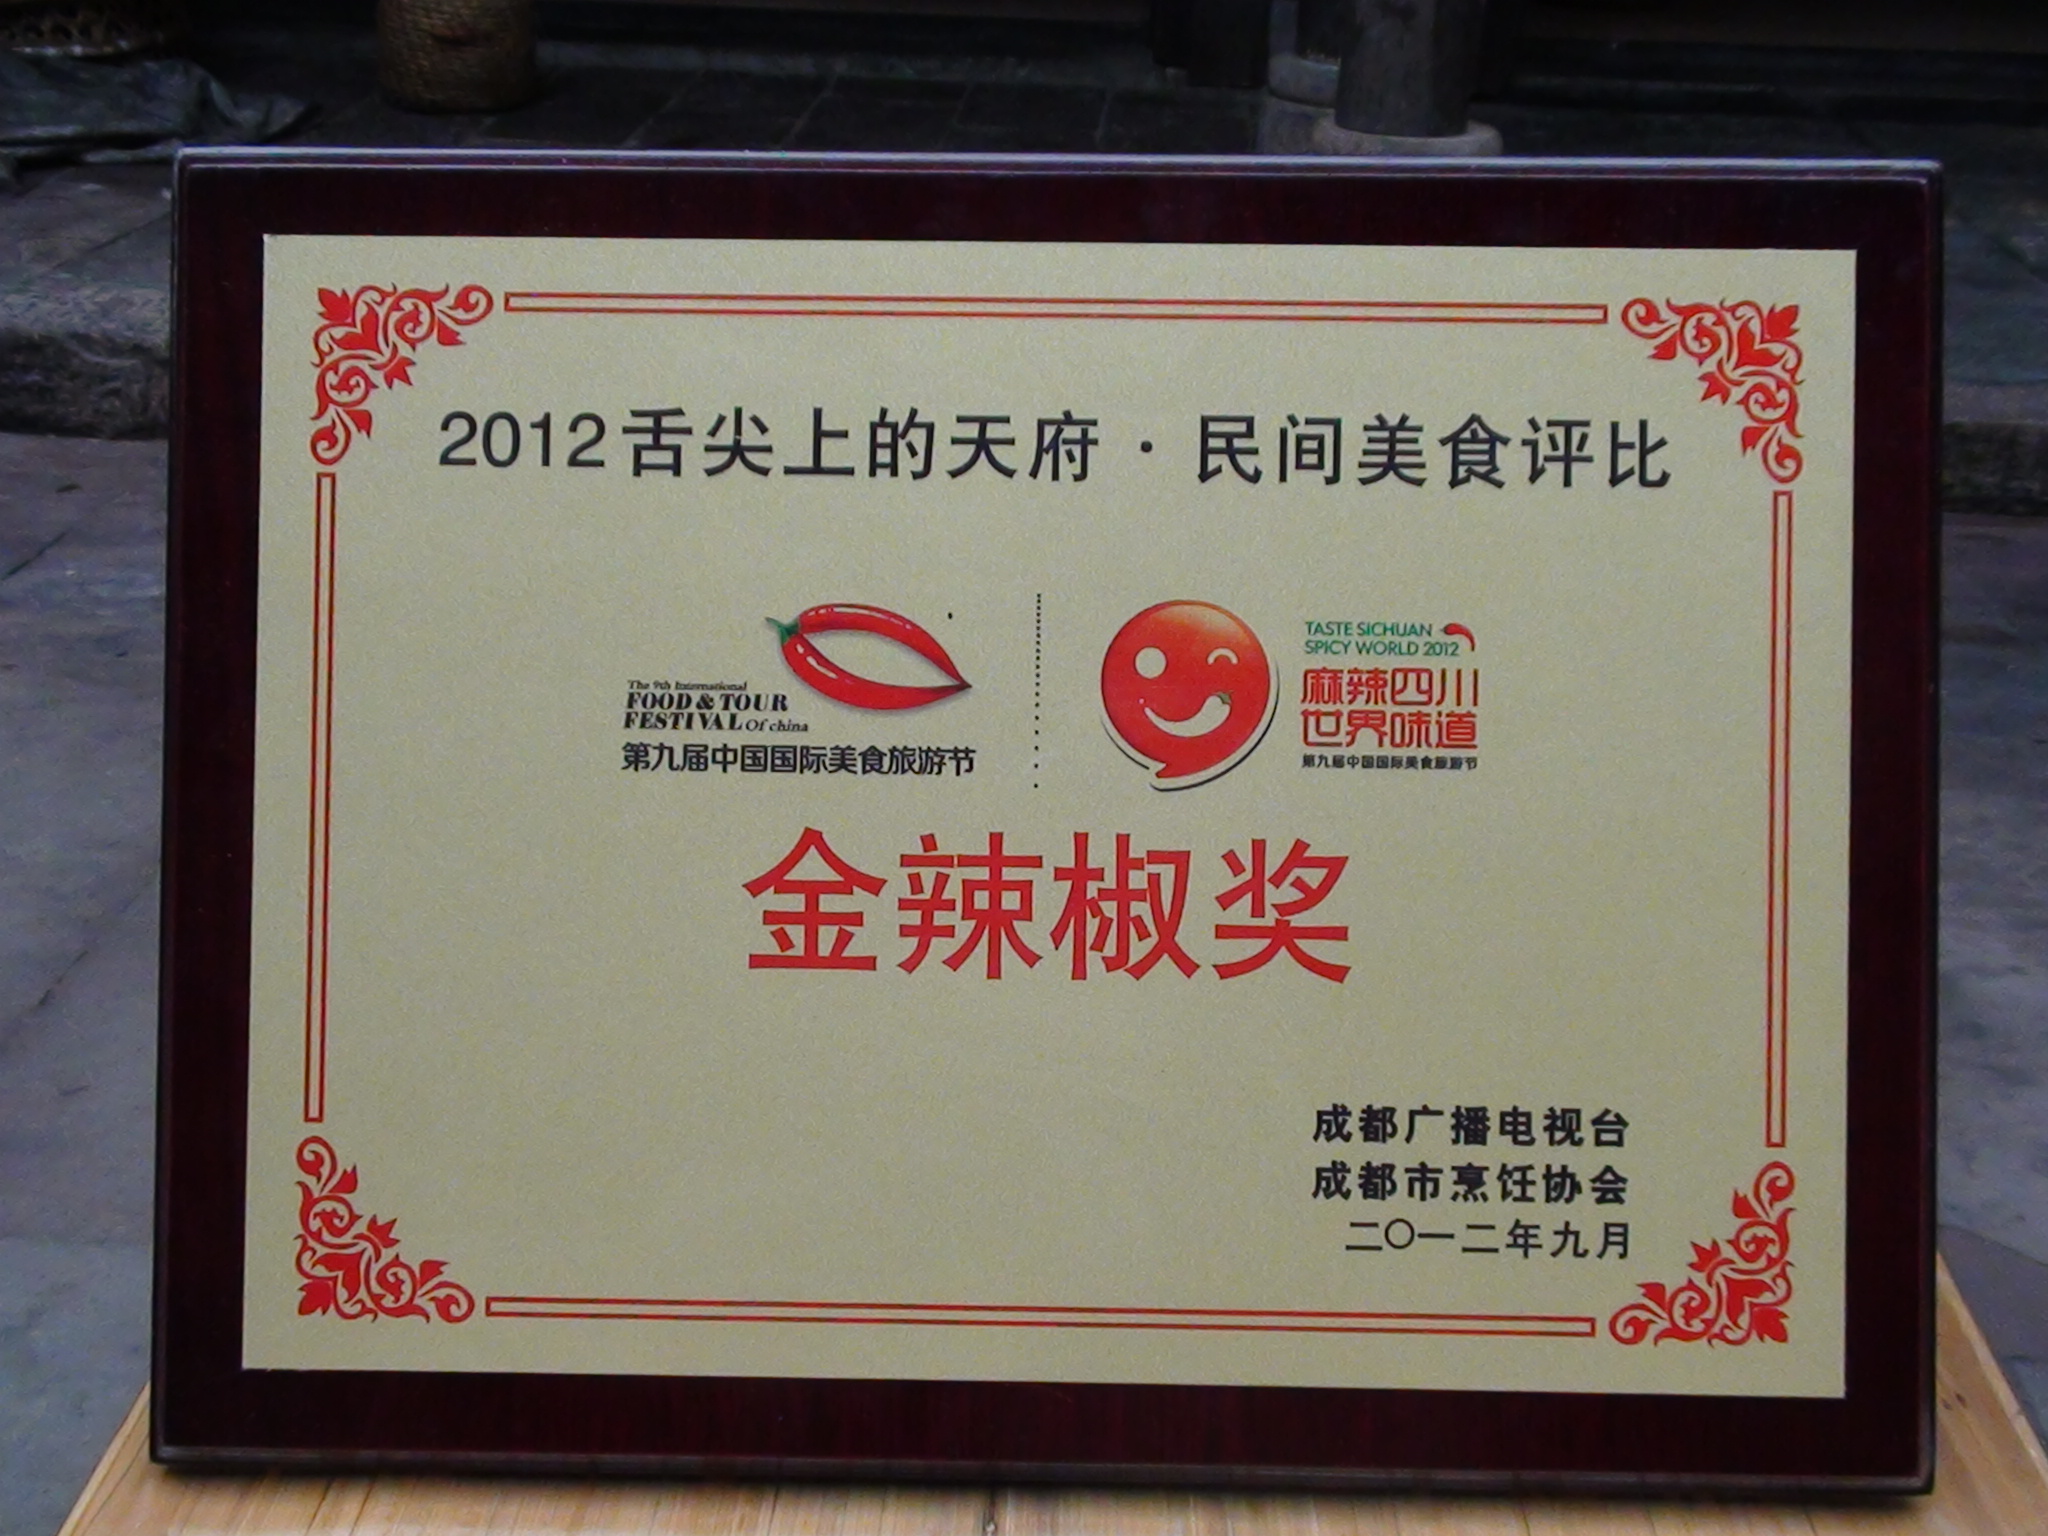 第九屆中國國際美食節最高獎項“金辣椒獎”